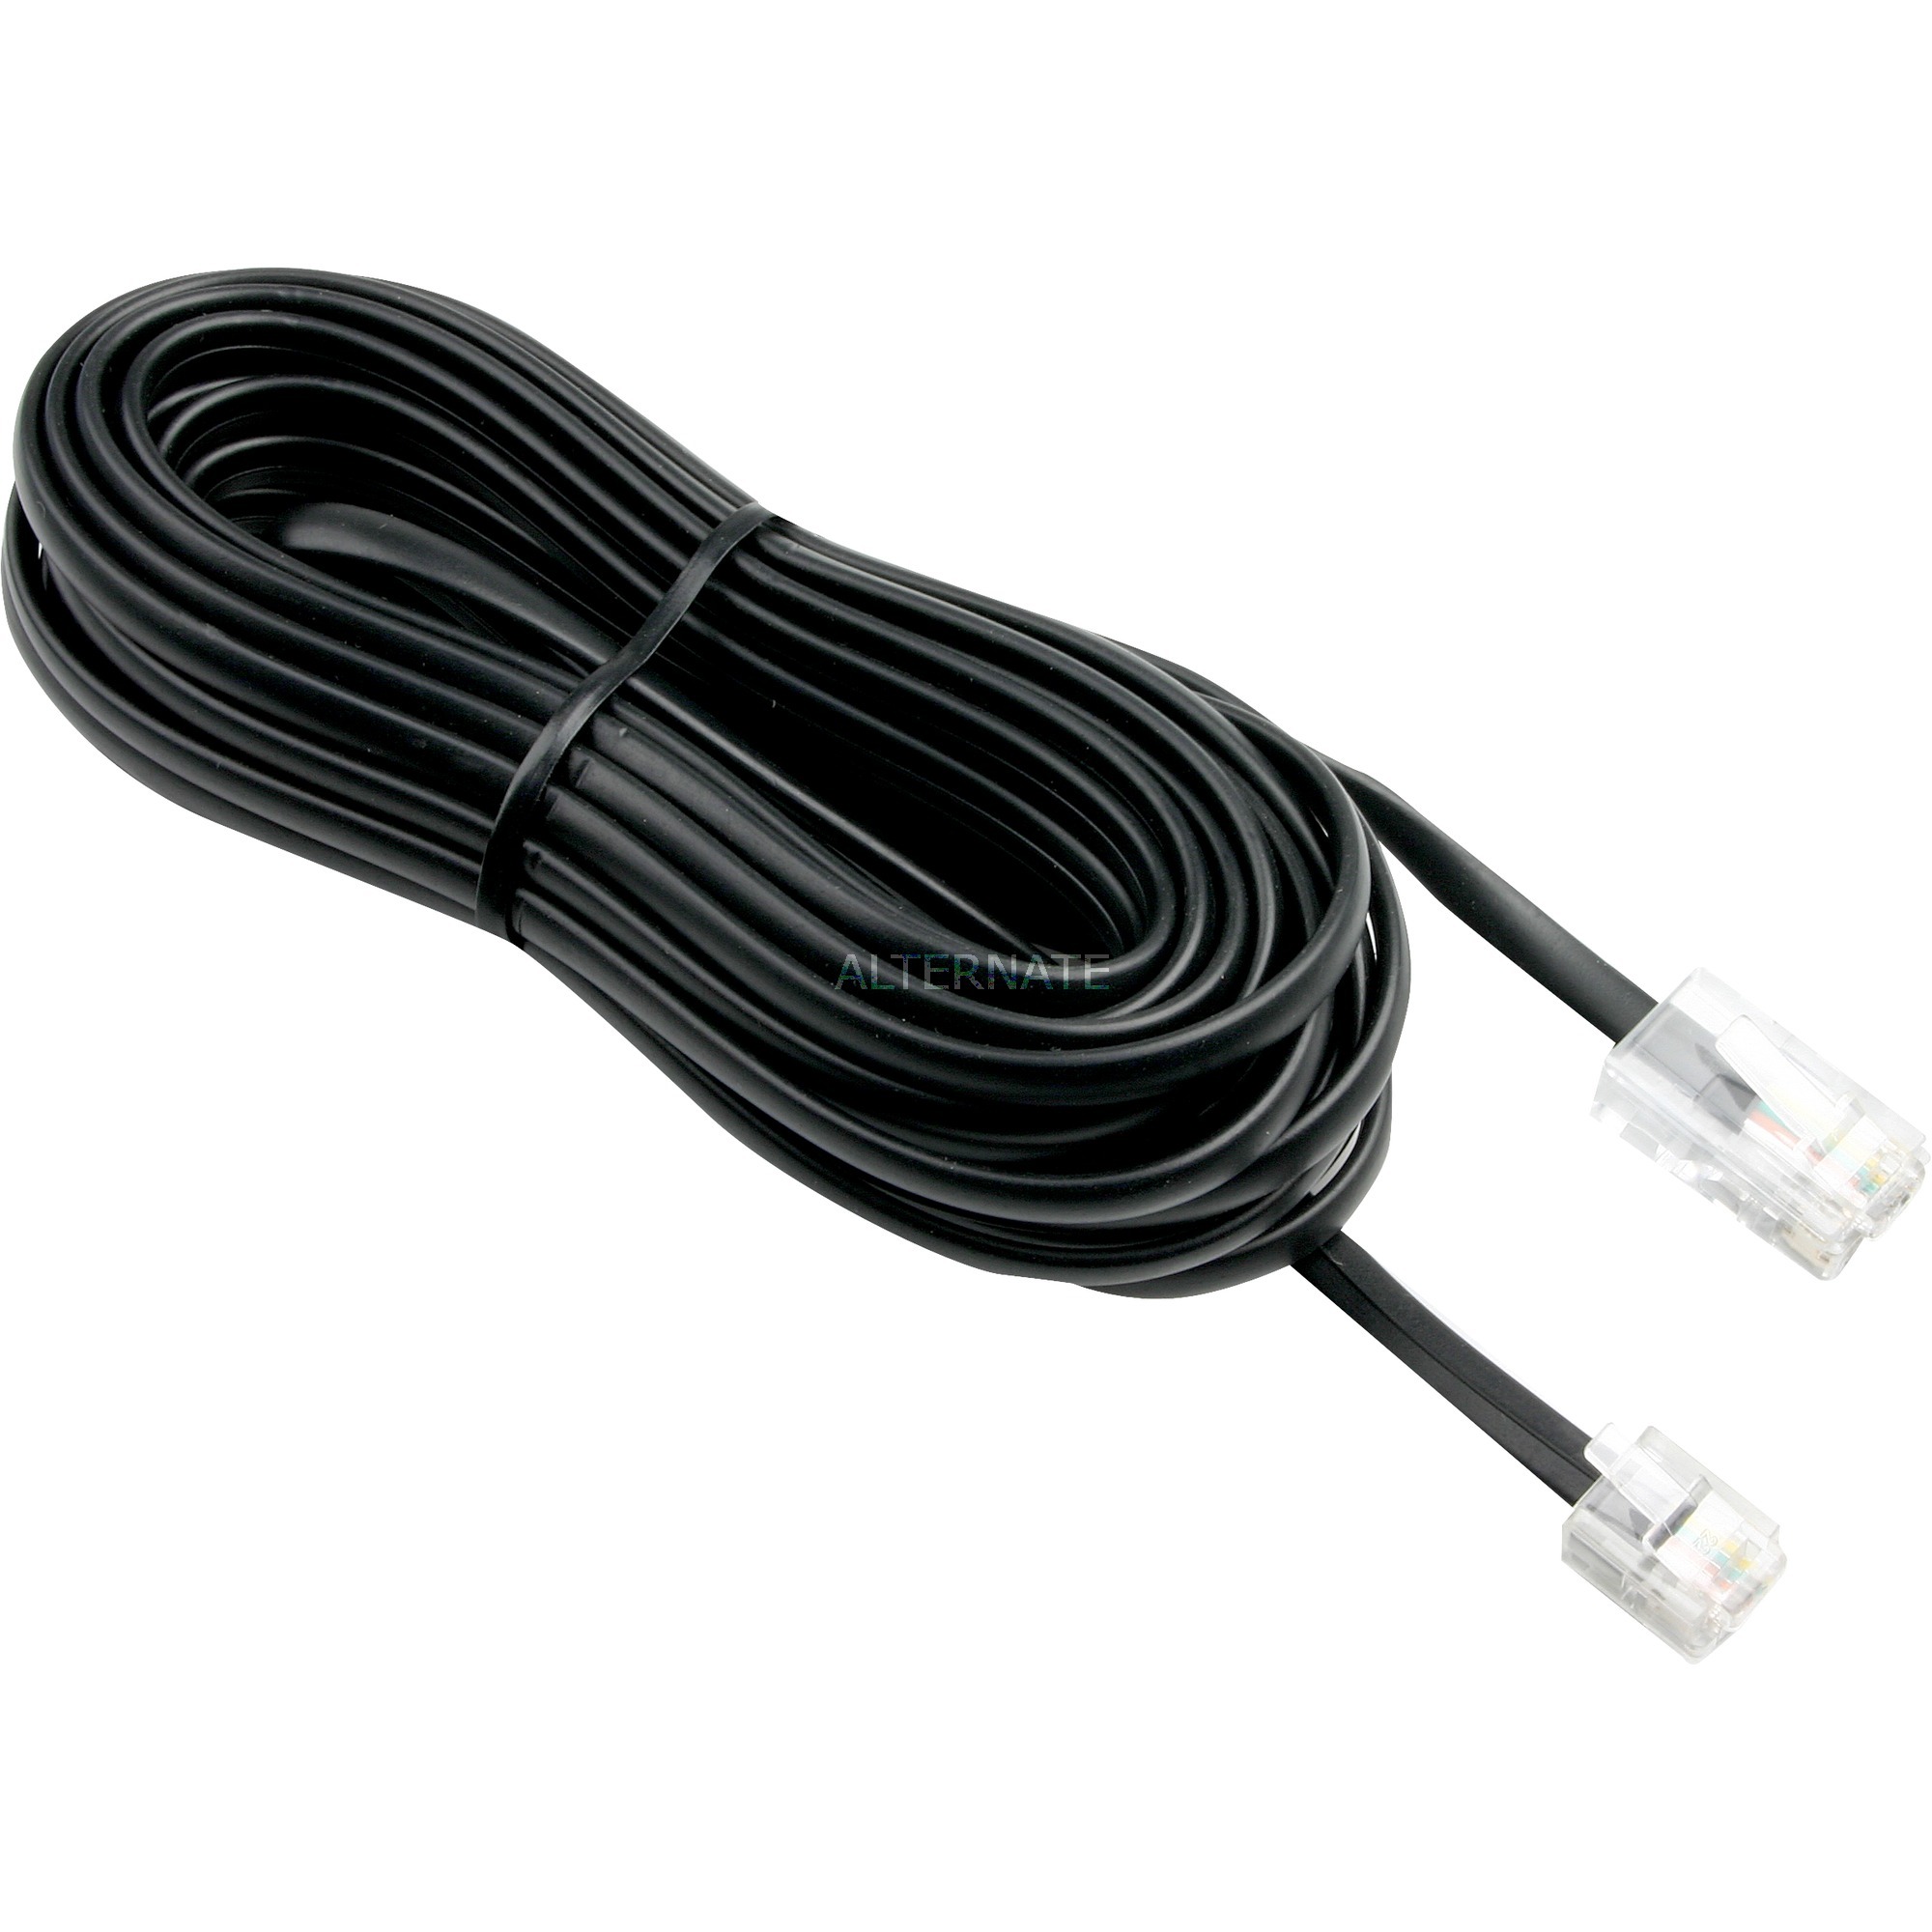 Image of Alternate - ISDN-Kabel online einkaufen bei Alternate